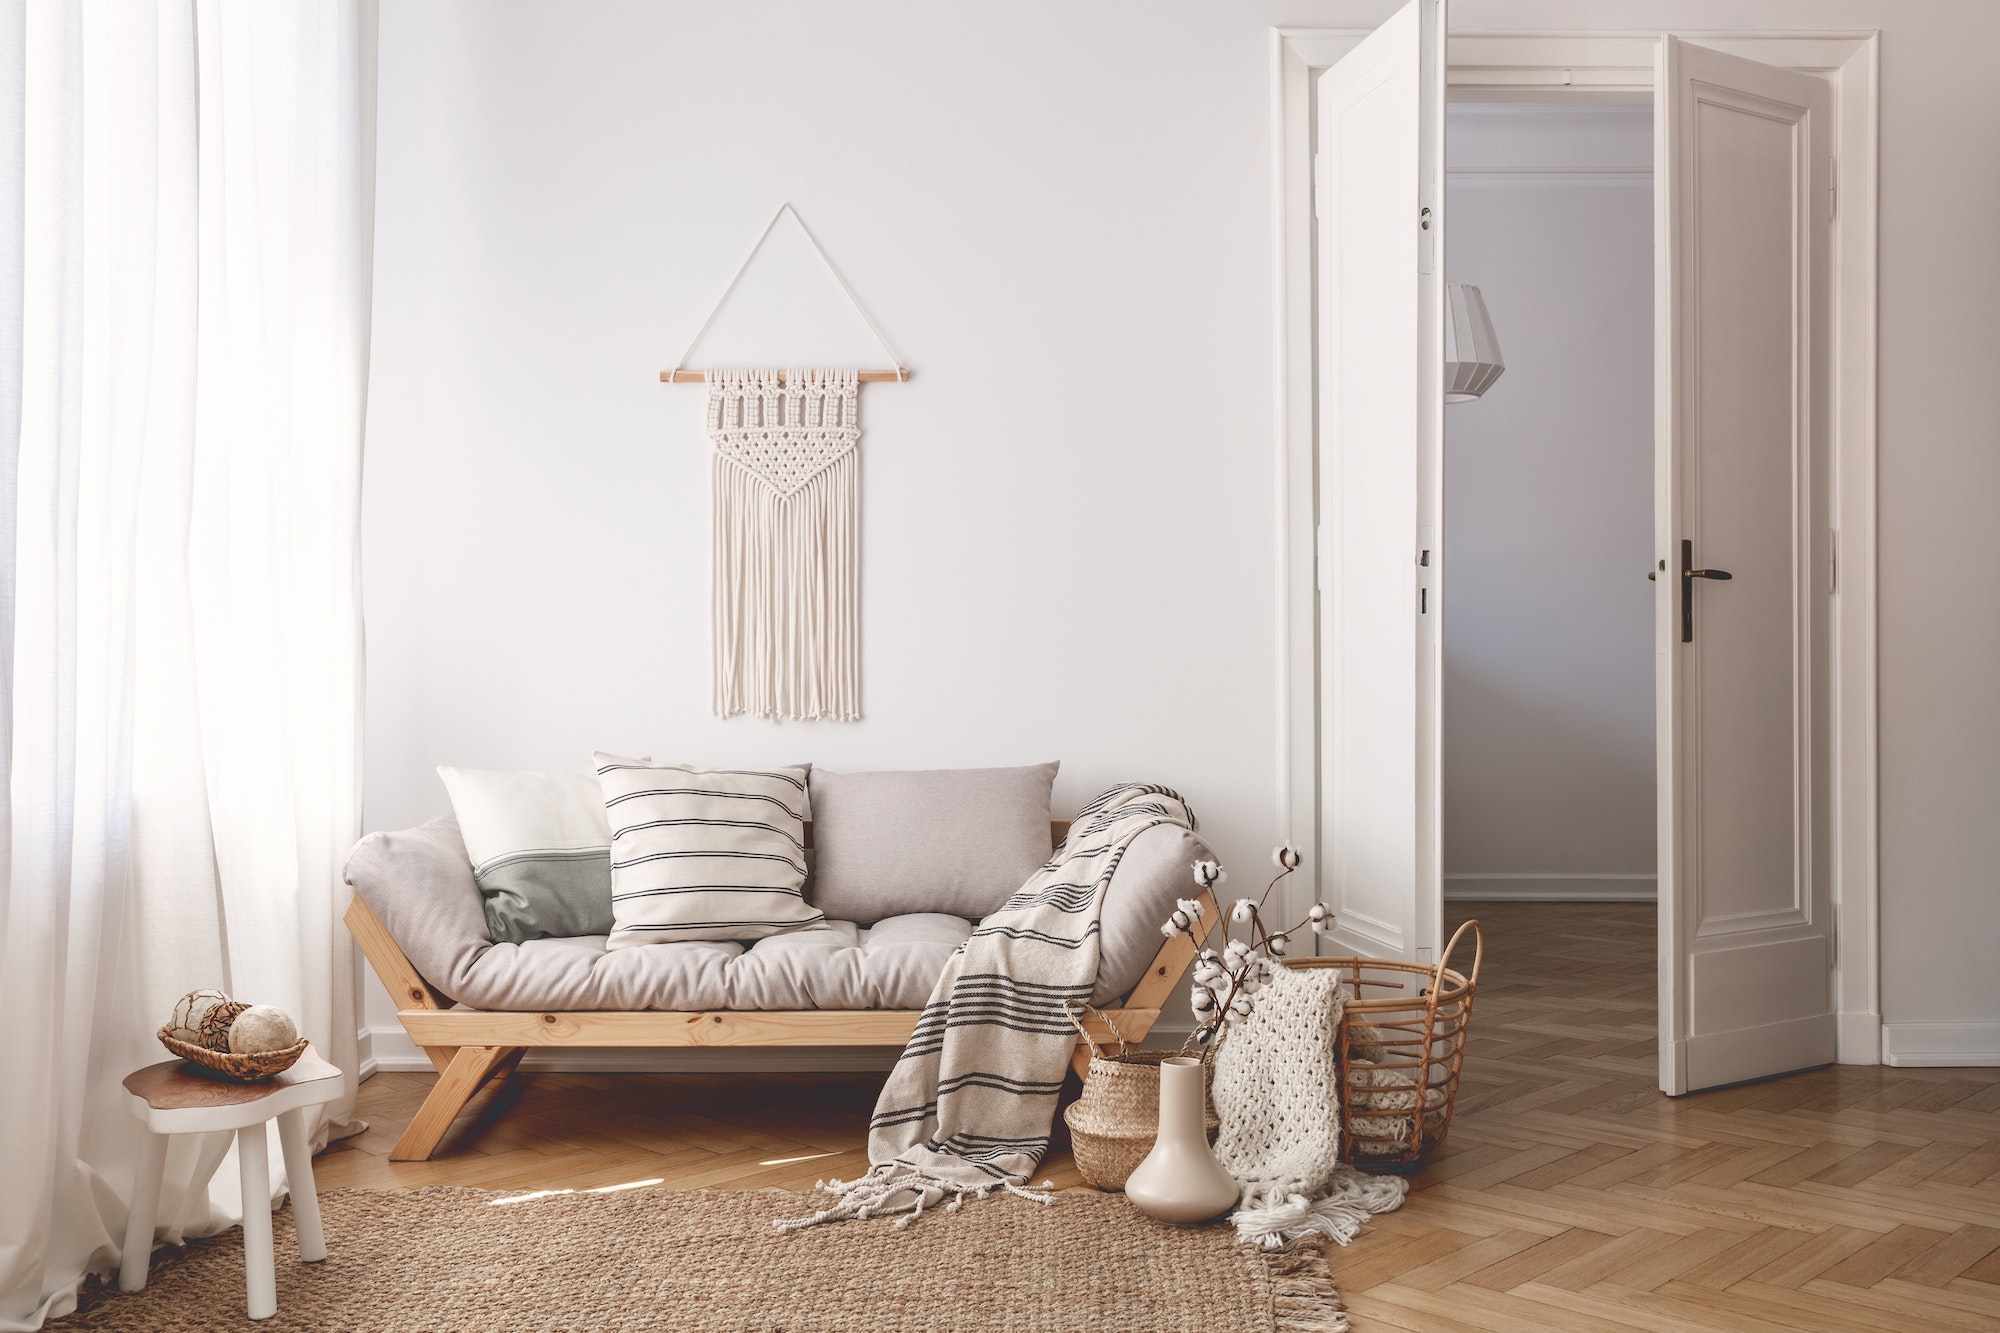 Sunlit living room interior with open door, herringbone parquet